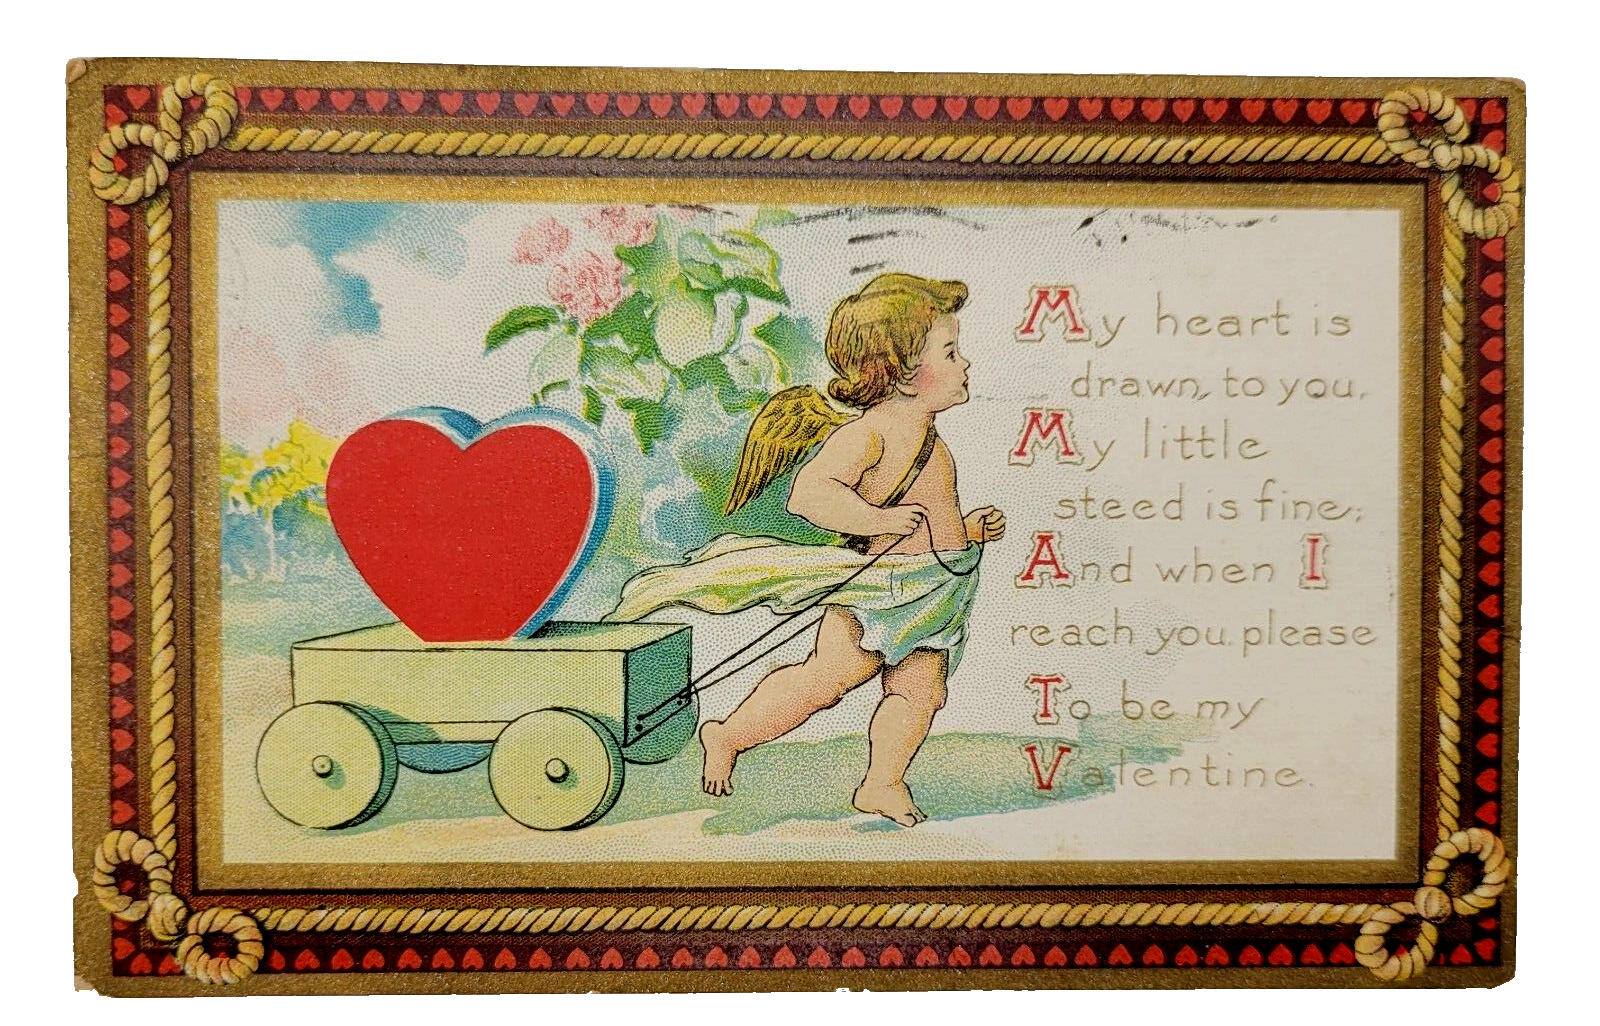 Antique Valentine Cherub Cupid Angel Pull Heart Cart 1910s Postcard Cancel Stamp